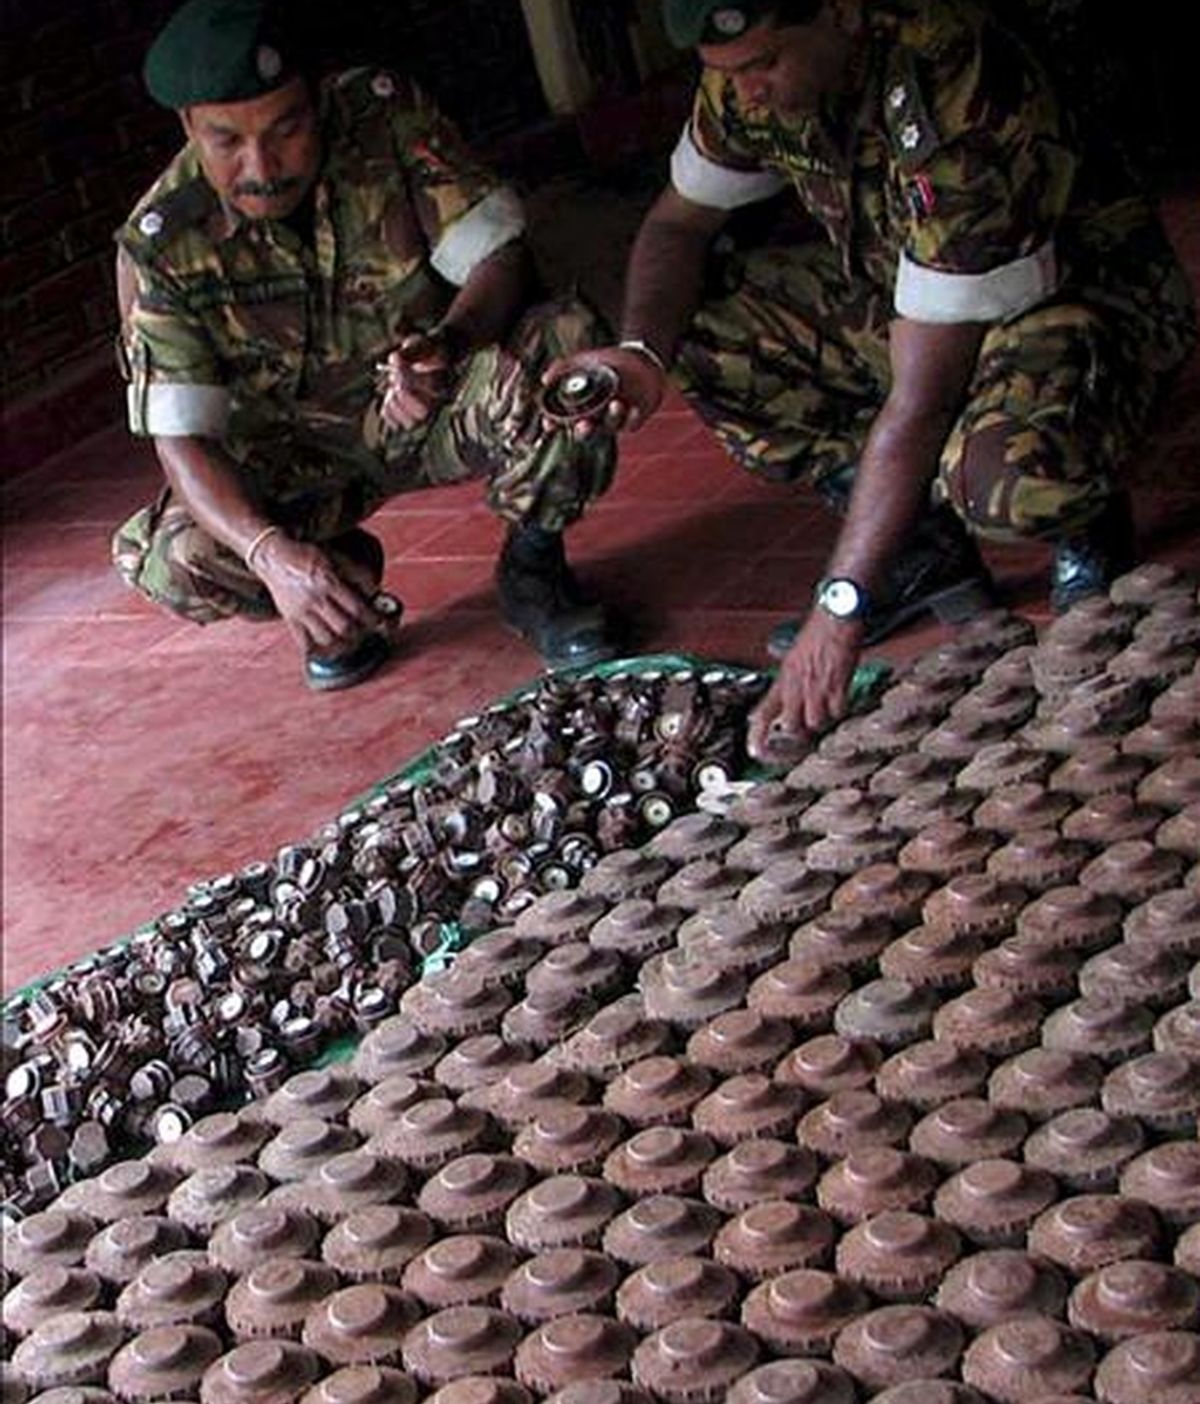 Miembros de una unidad especial de la policía realizan un recuento de minas antipersona y otros explosivos recuperados en áreas donde opera la guerrilla Tigres para la Liberación de la Patria Tamil (LTTE), el pasado 3 de abril. EFE/Archivo